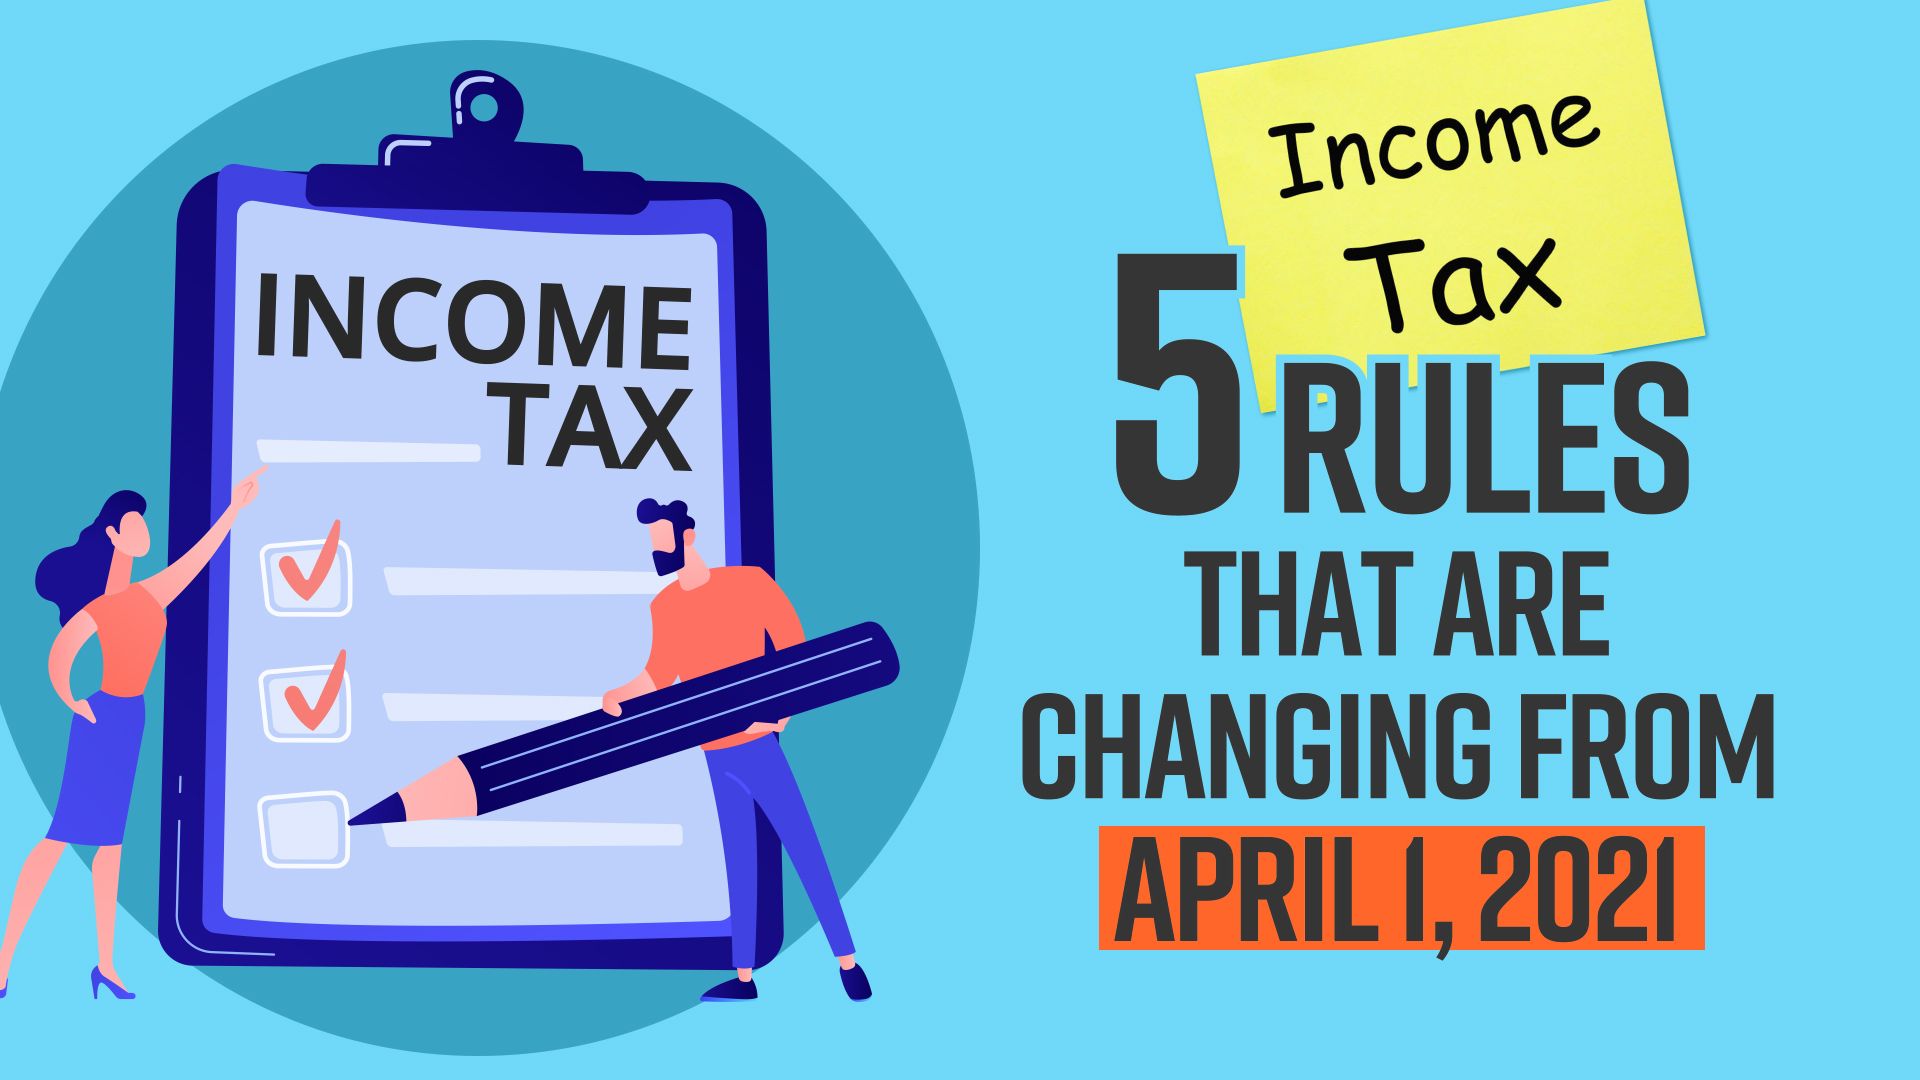 Tax New Rules आज से बदल रहे हैं इनकम टैक्स के नियम, जानिए किस